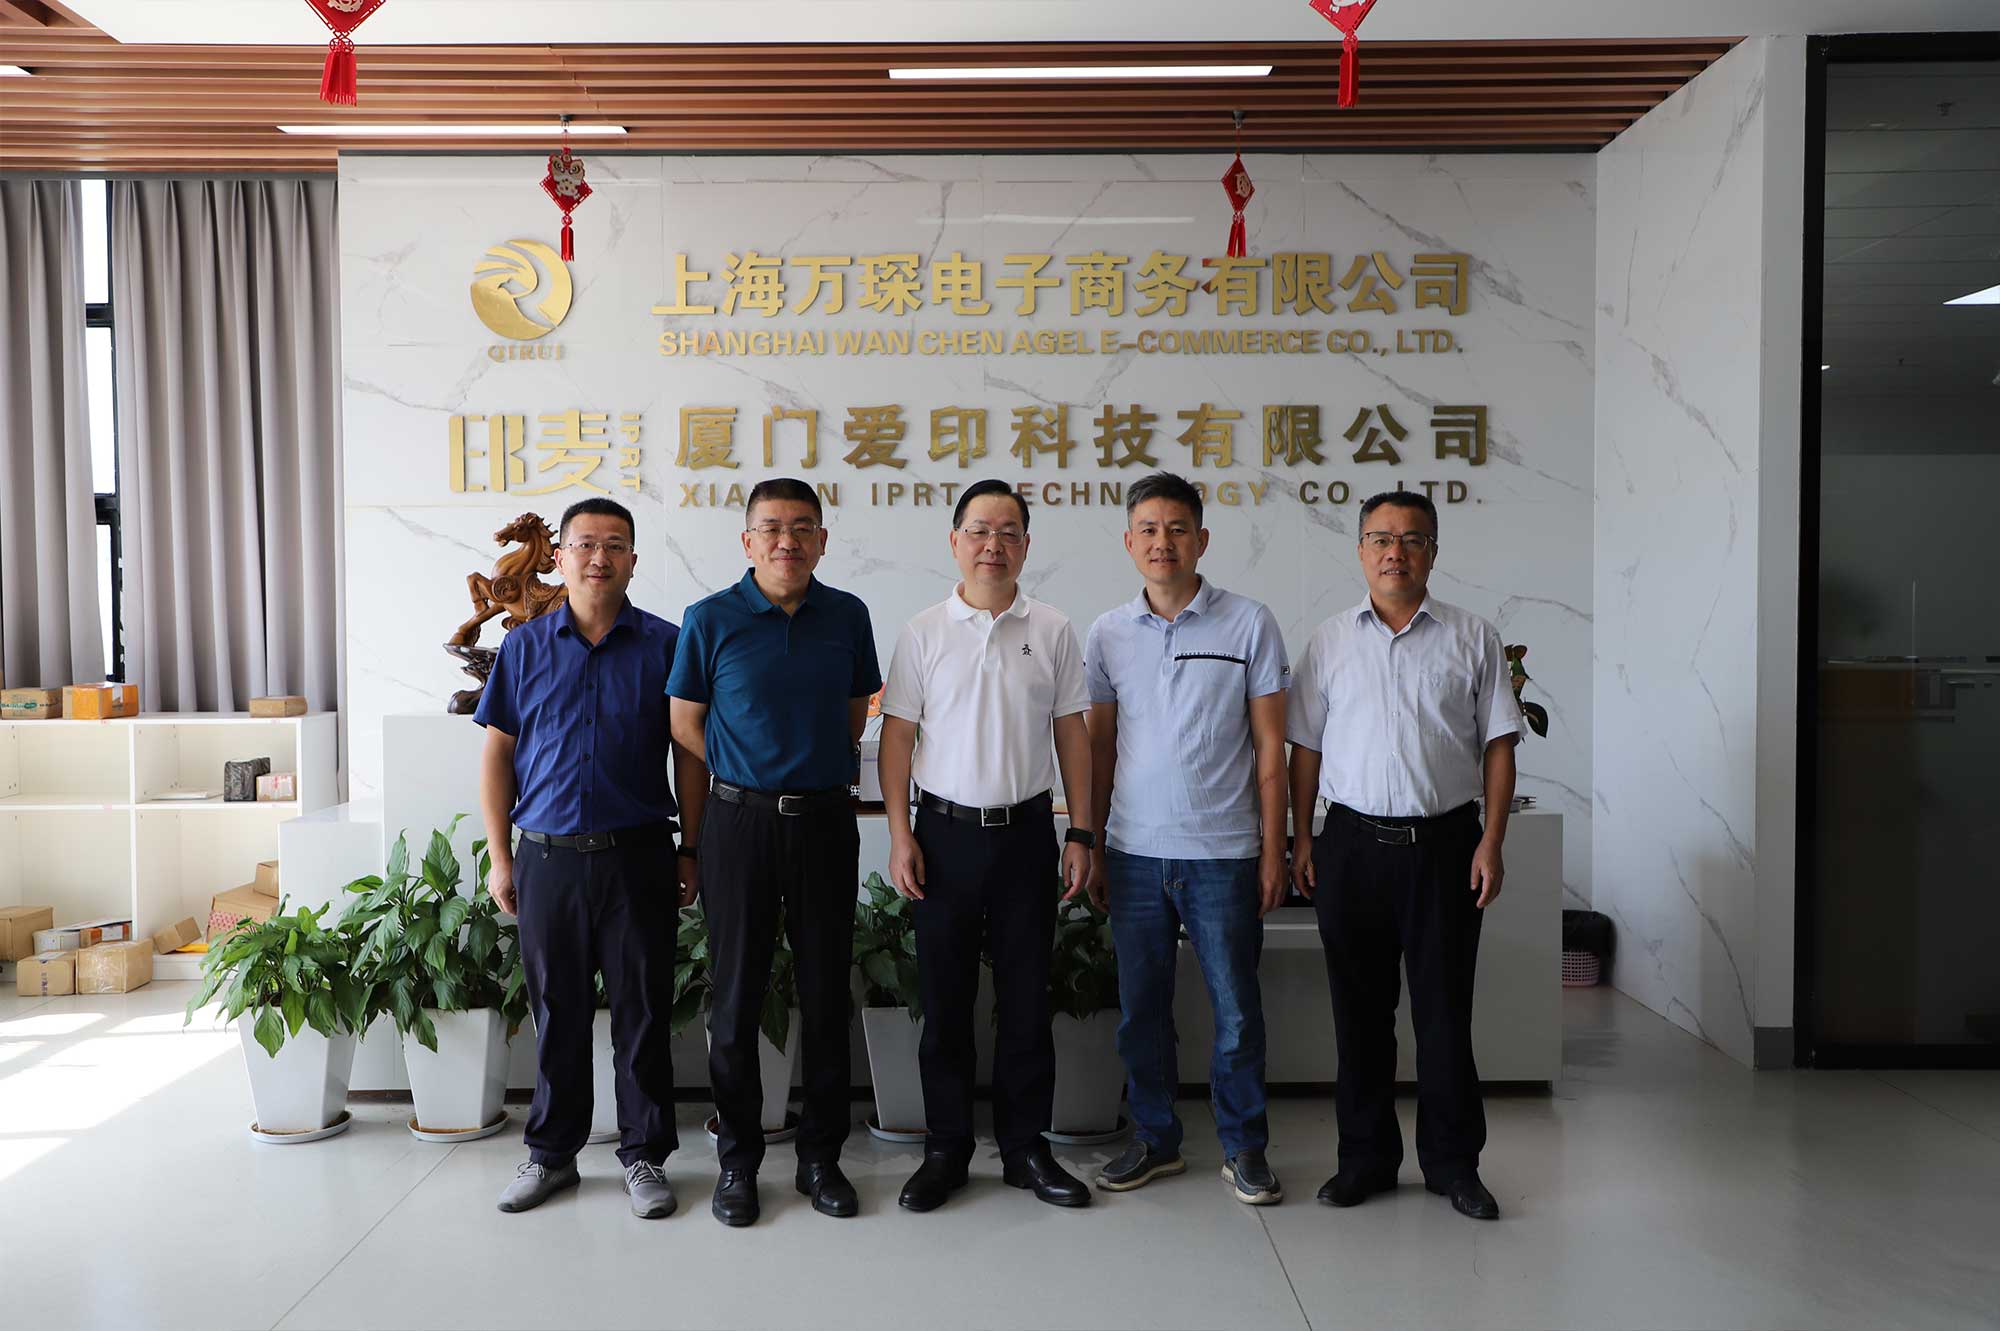 Le vice-président de Xiamen CPPCC Li Qinhui et d'autres ont visité IPRT Technology pour enquête et conseils